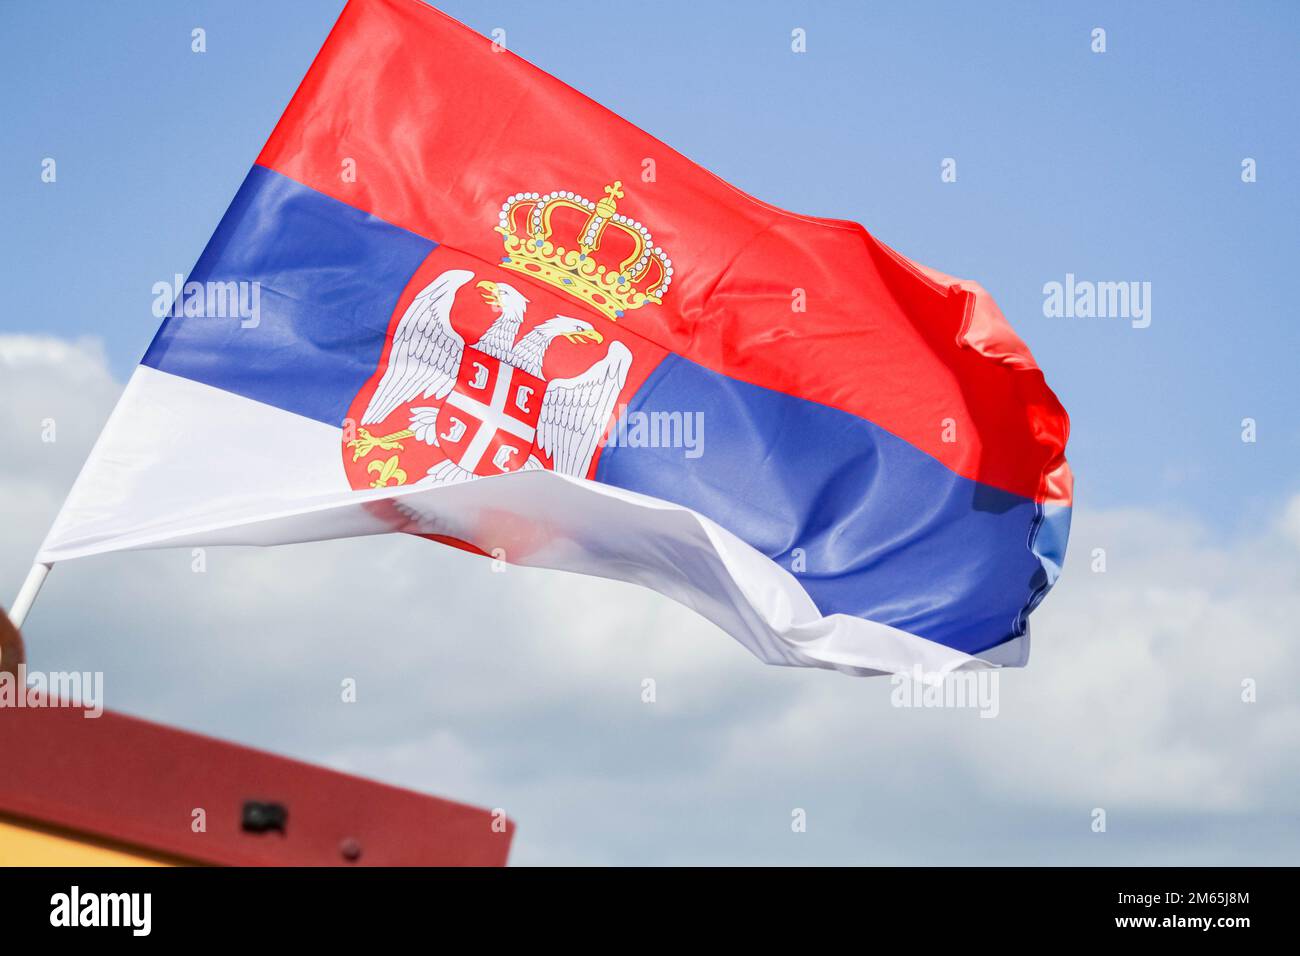 Le drapeau de la serbie contre le ciel bleu flotte dans le vent. Drapeau d'un pays en Europe. Banque D'Images